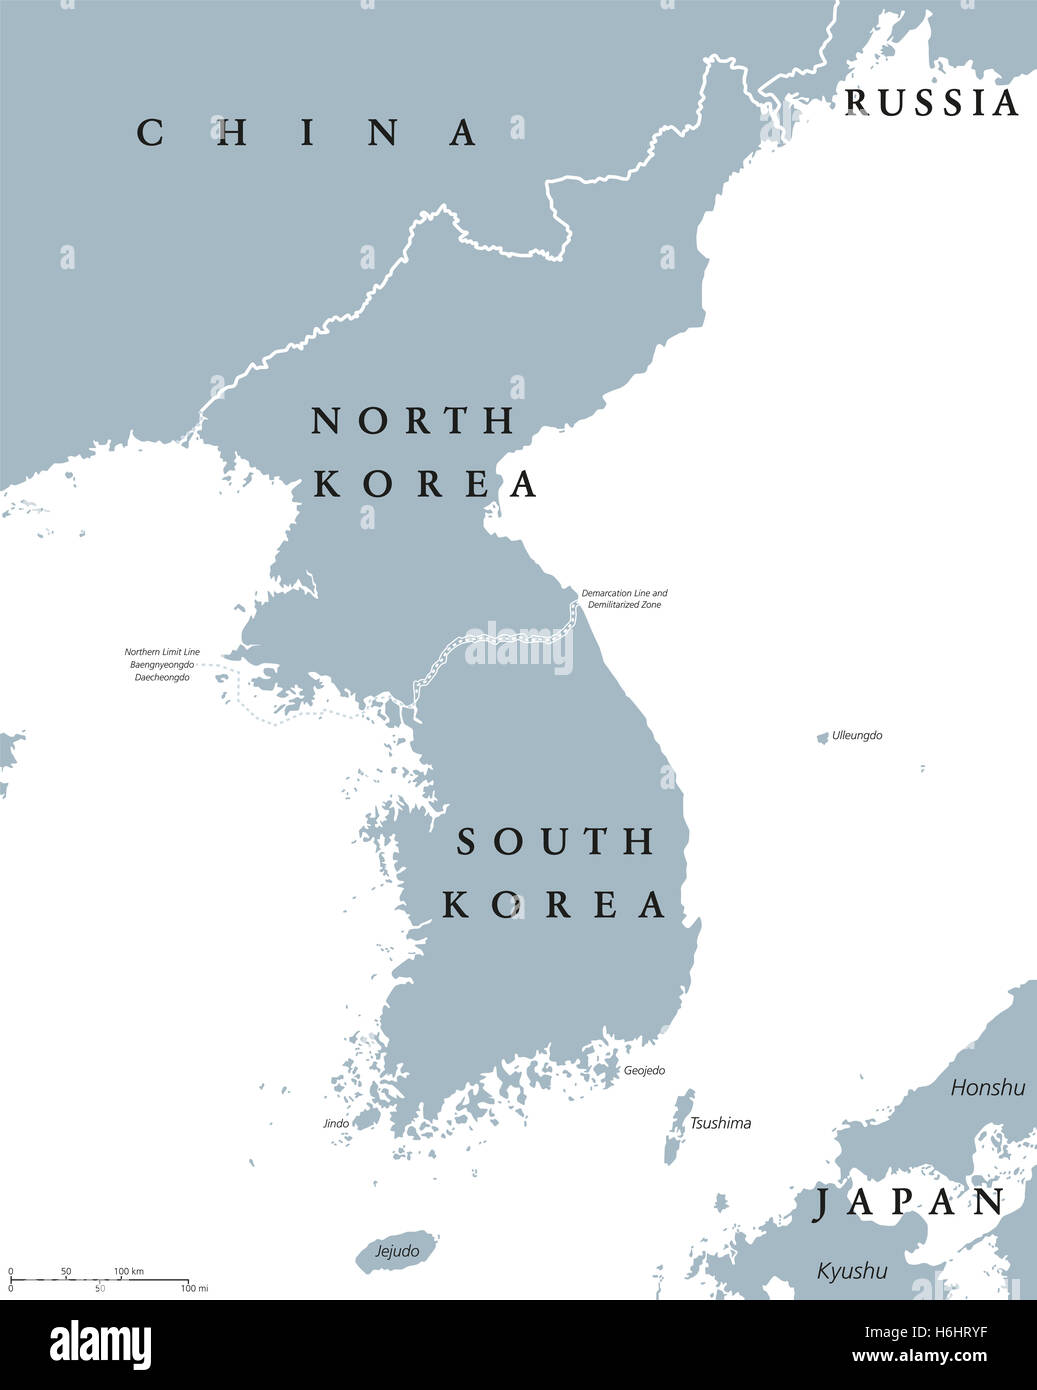 Mapa político de los países de la península coreana con Corea del Norte y Corea del Sur y de las fronteras nacionales. Ilustración gris, rótulos en Inglés. Foto de stock